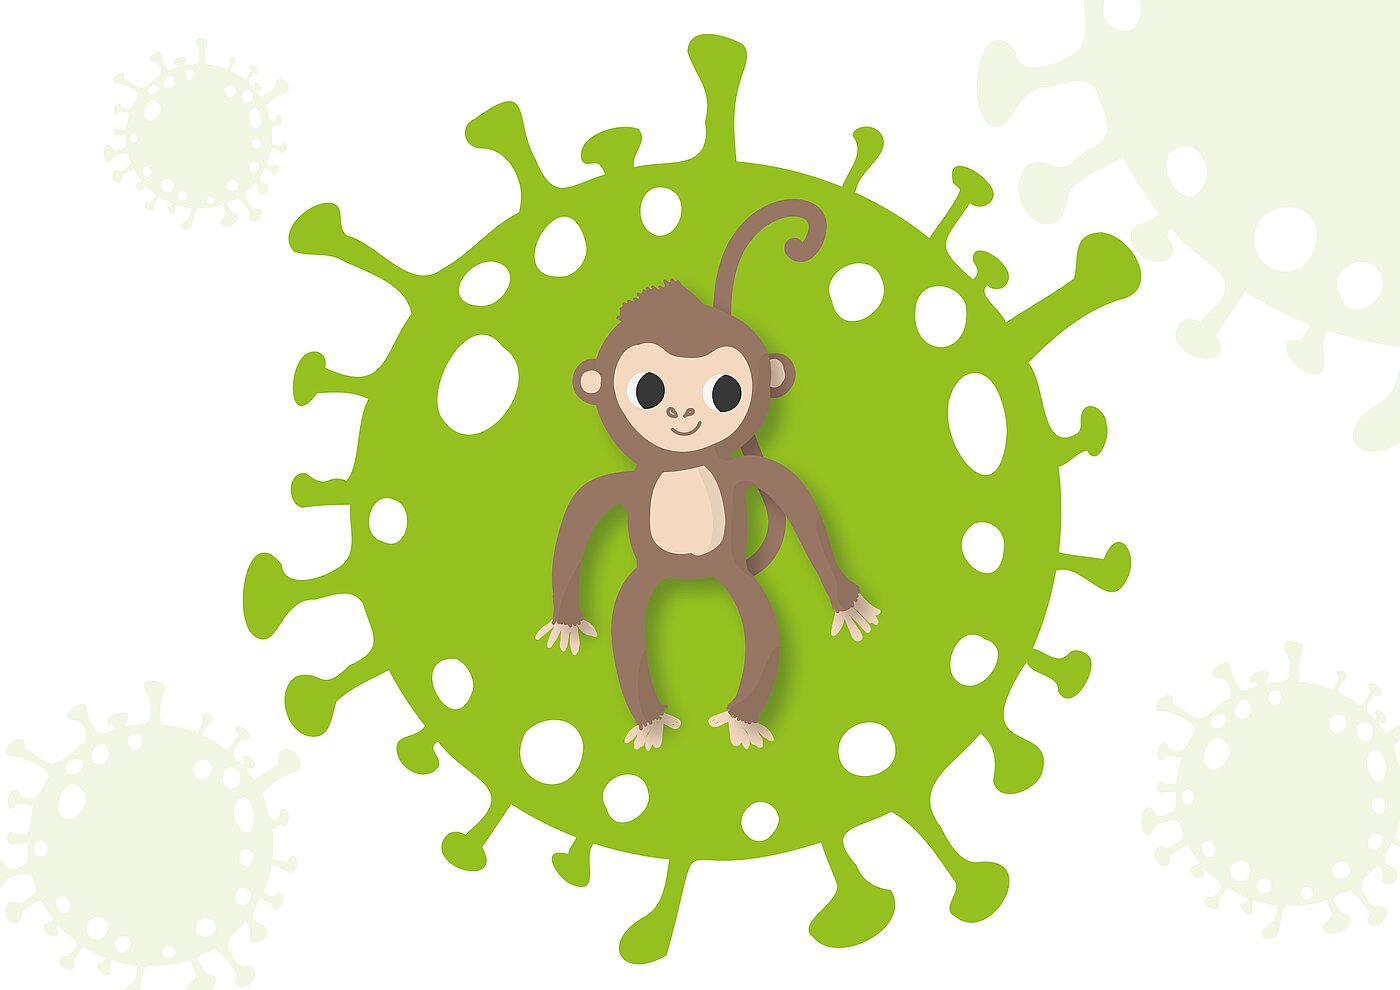 Das Bild zeigt einen Affen einem Virus.